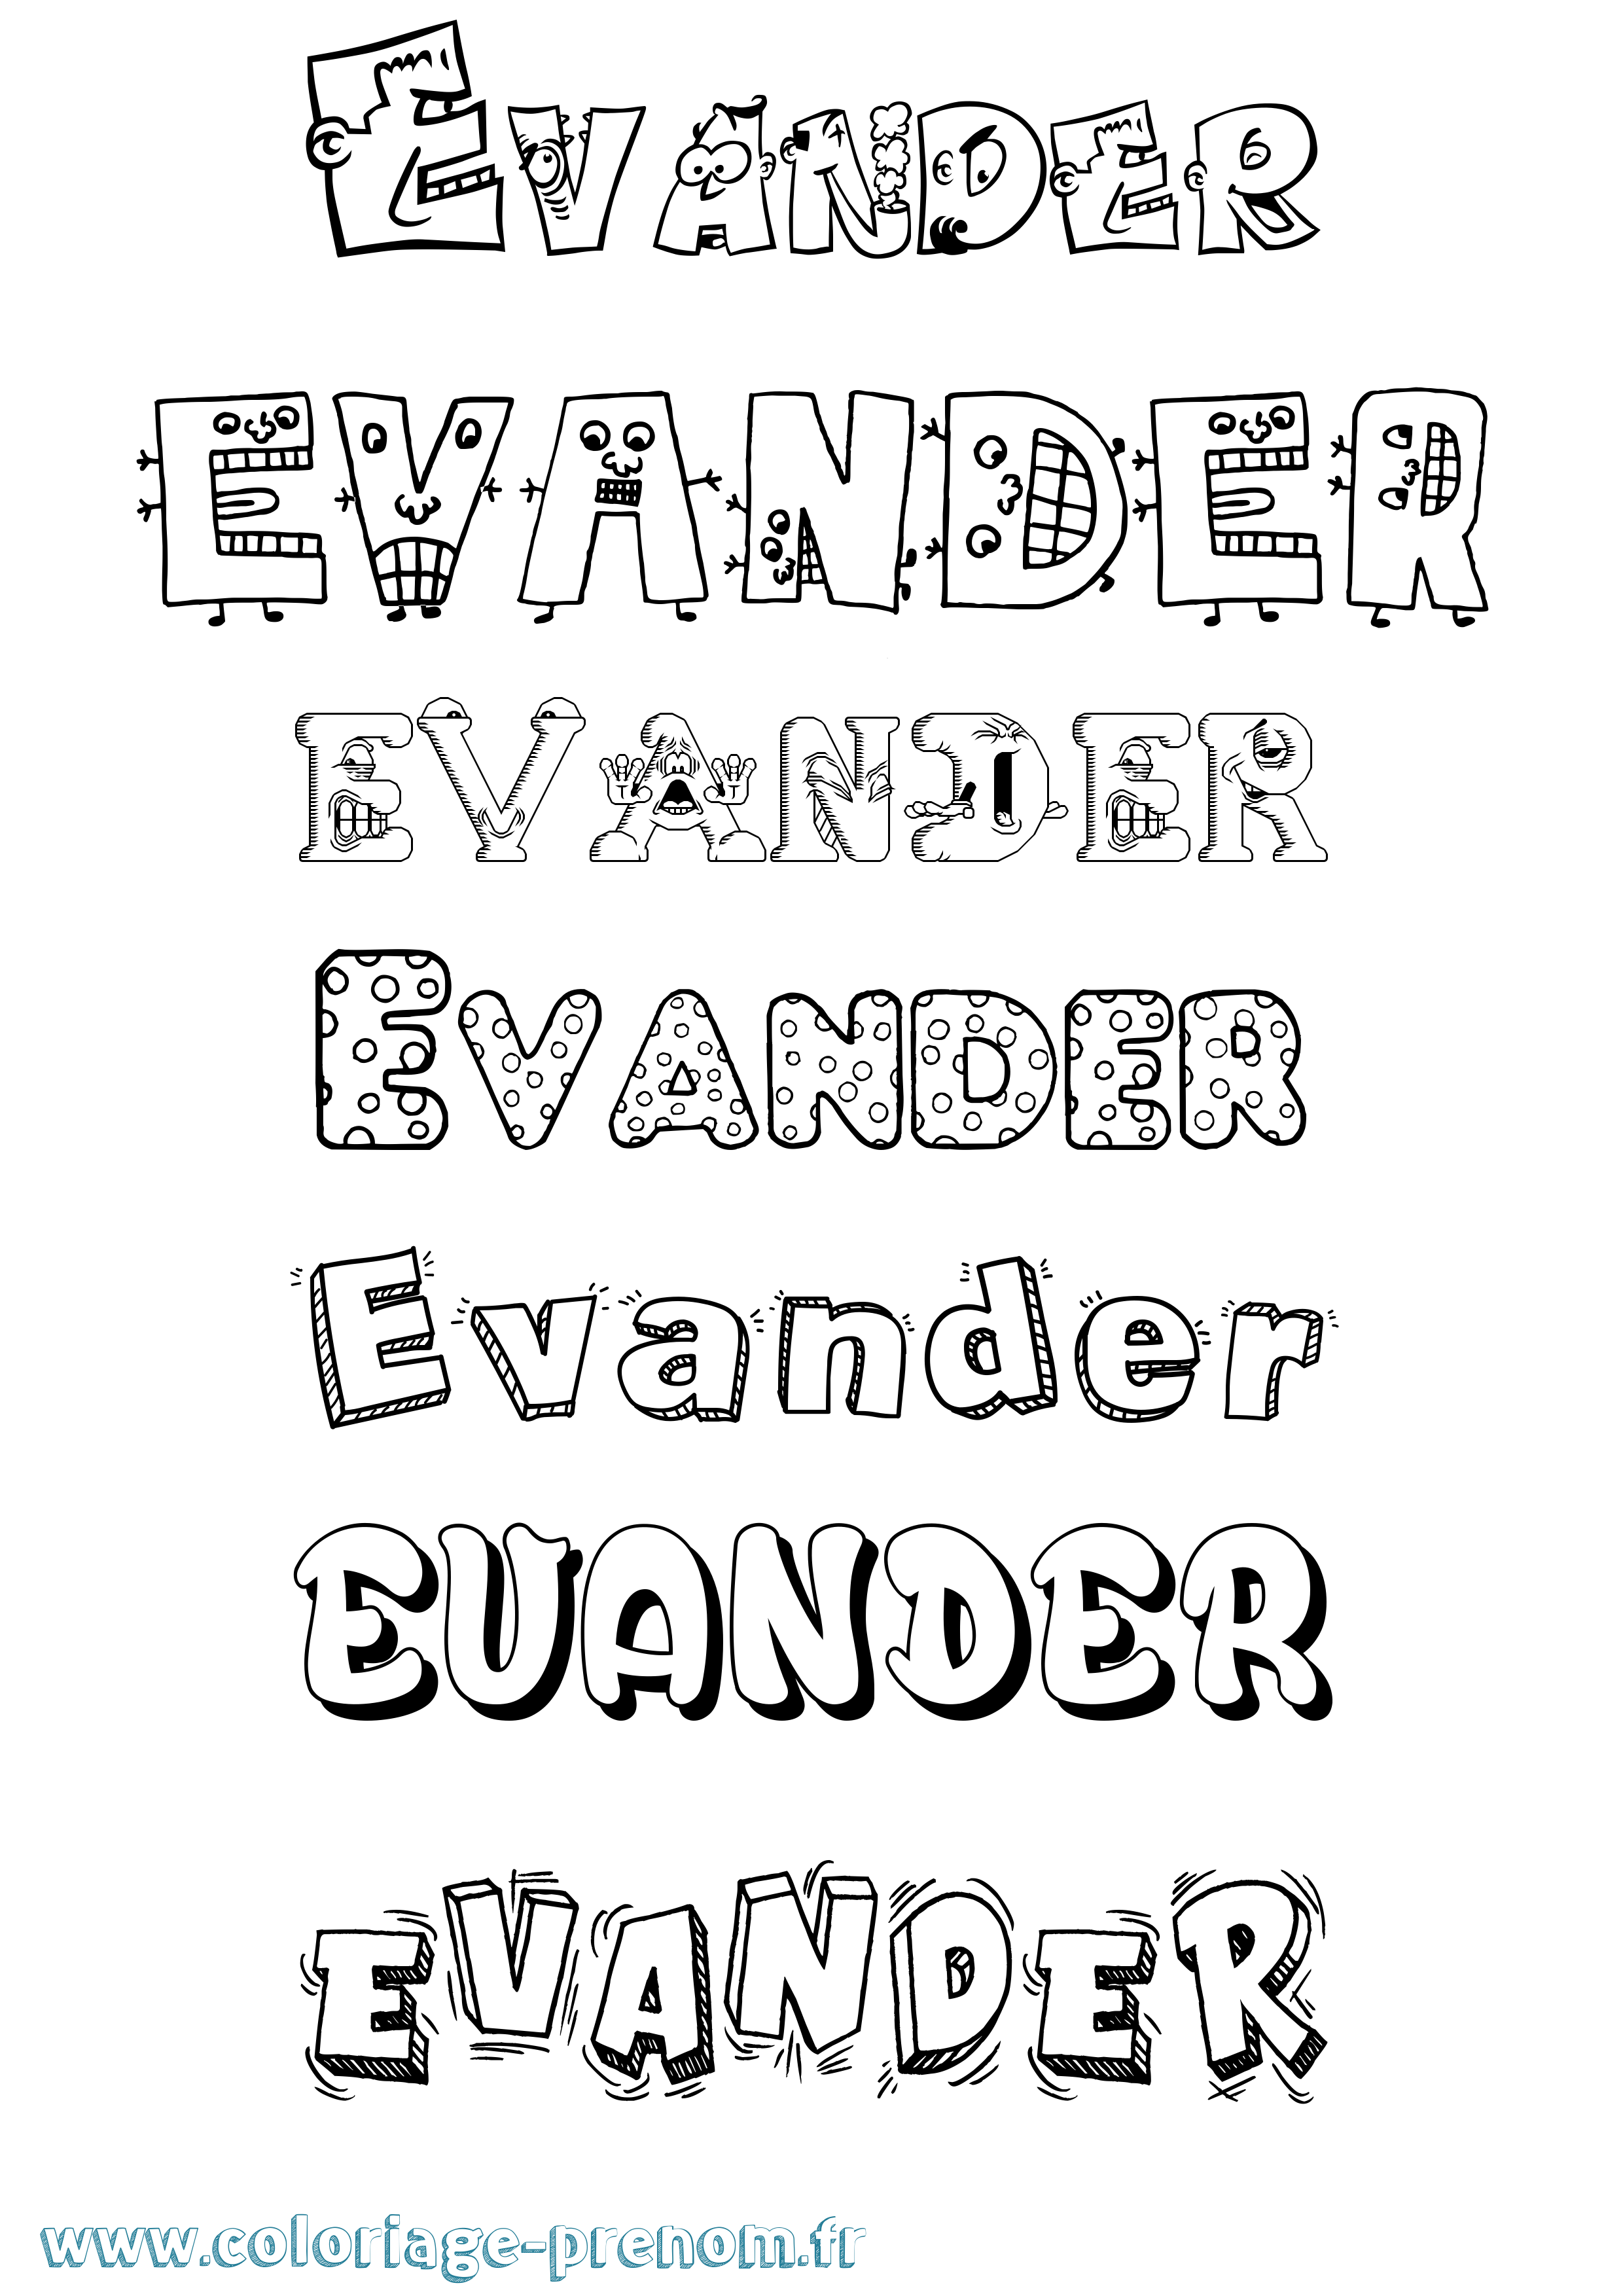 Coloriage prénom Evander Fun